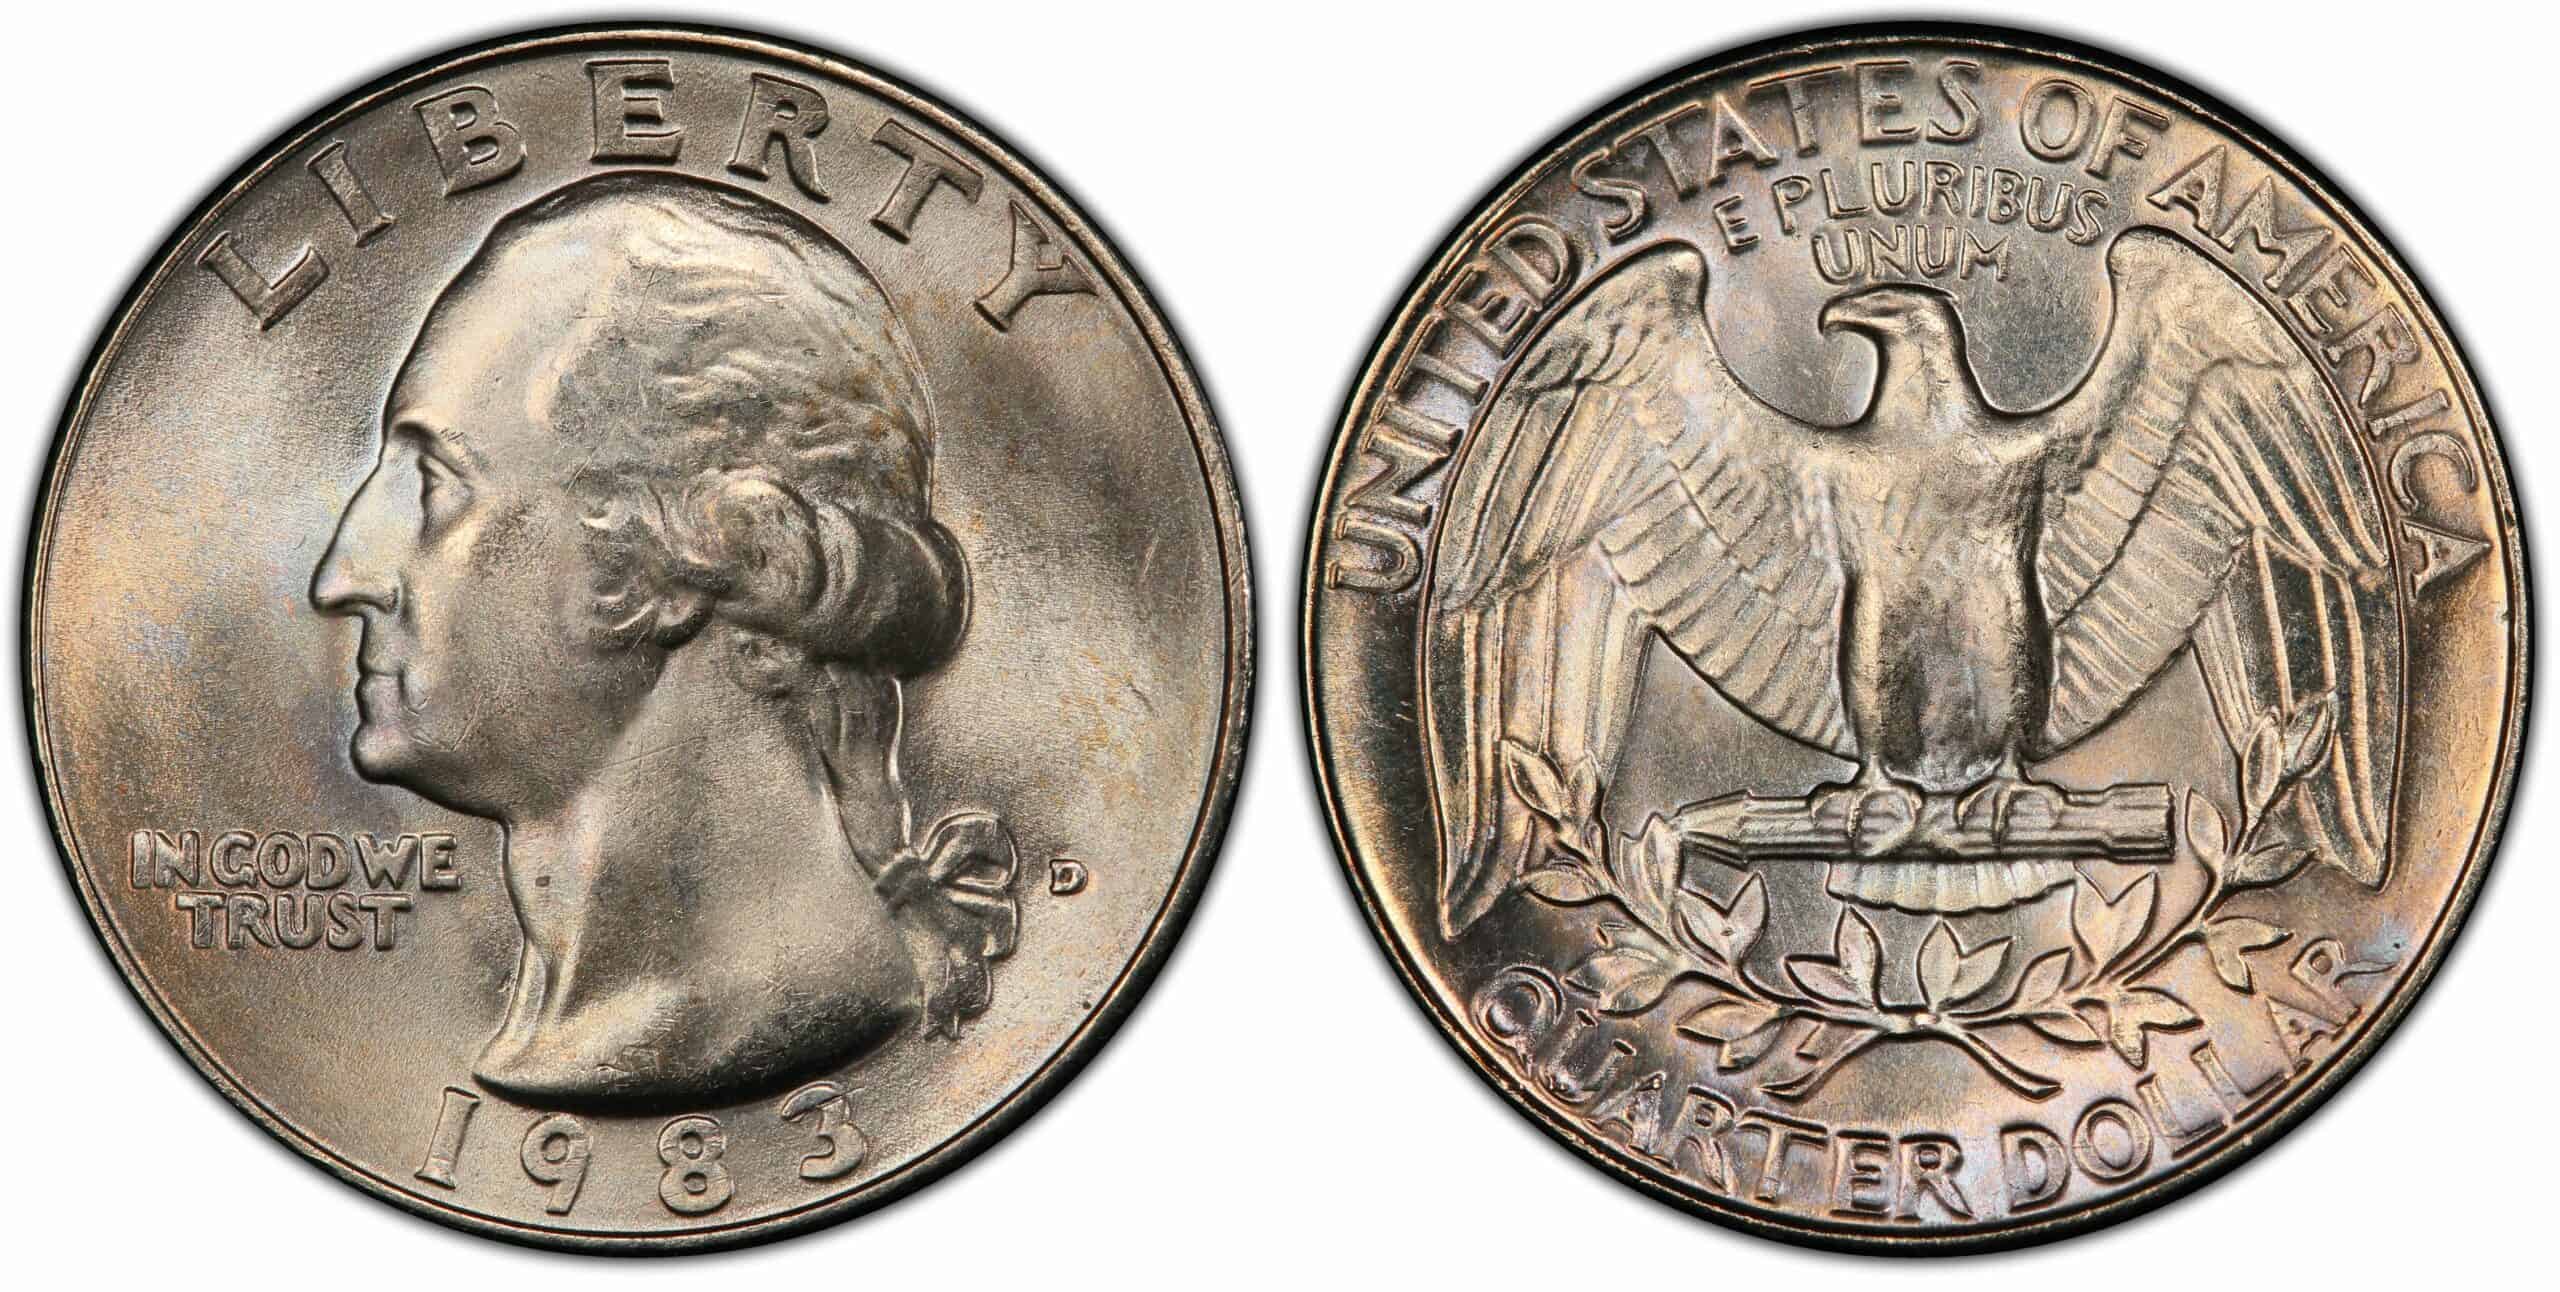 1983 Quarter Value